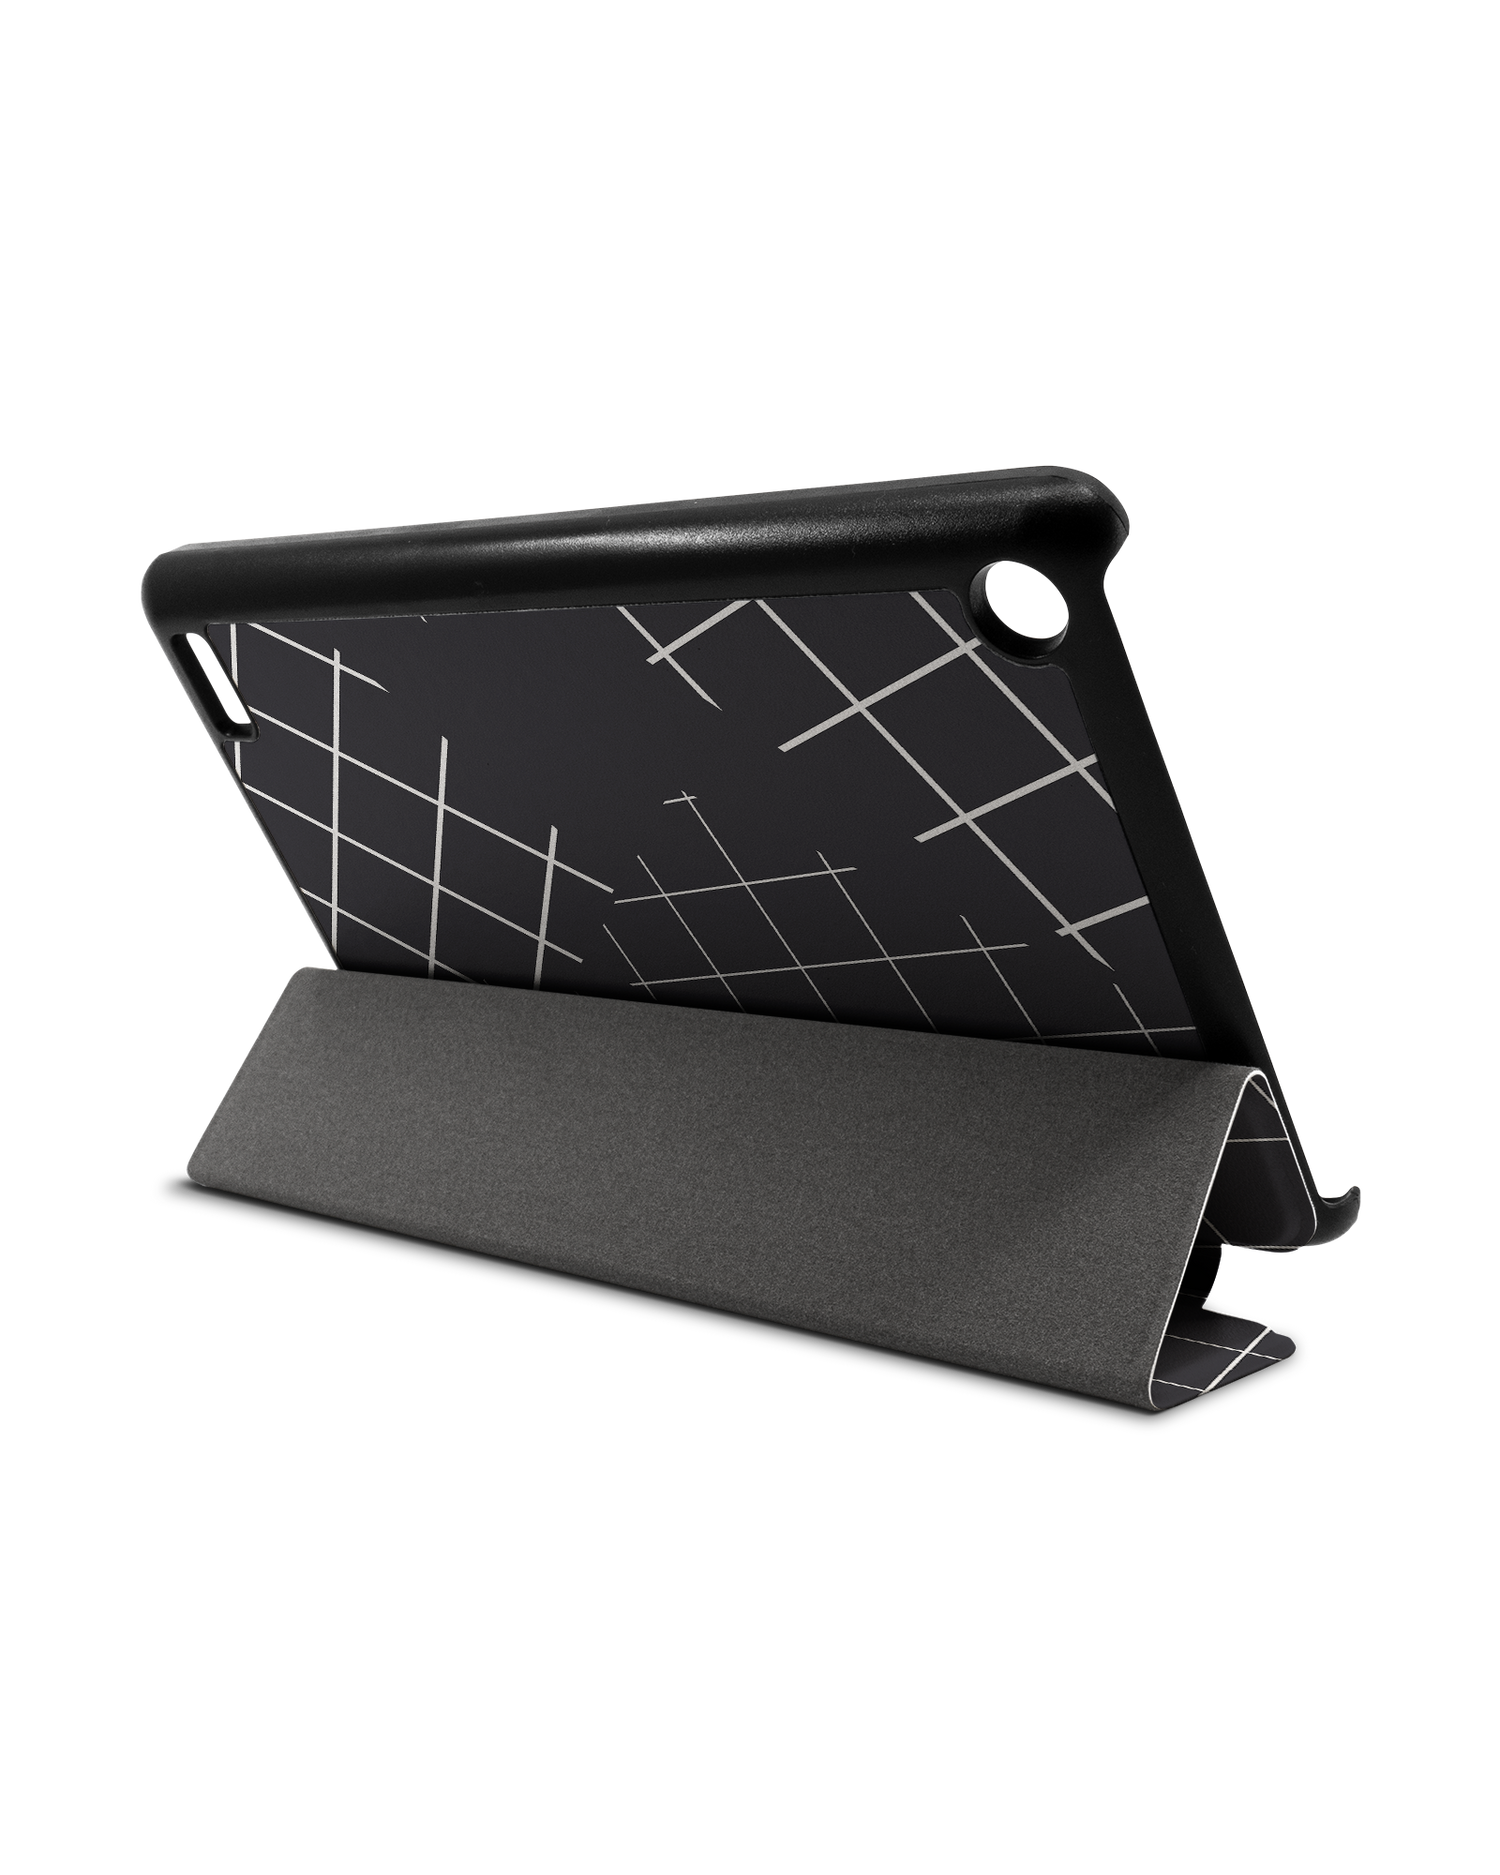 Grids Tablet Smart Case für Amazon Fire 7: Aufgestellt im Querformat